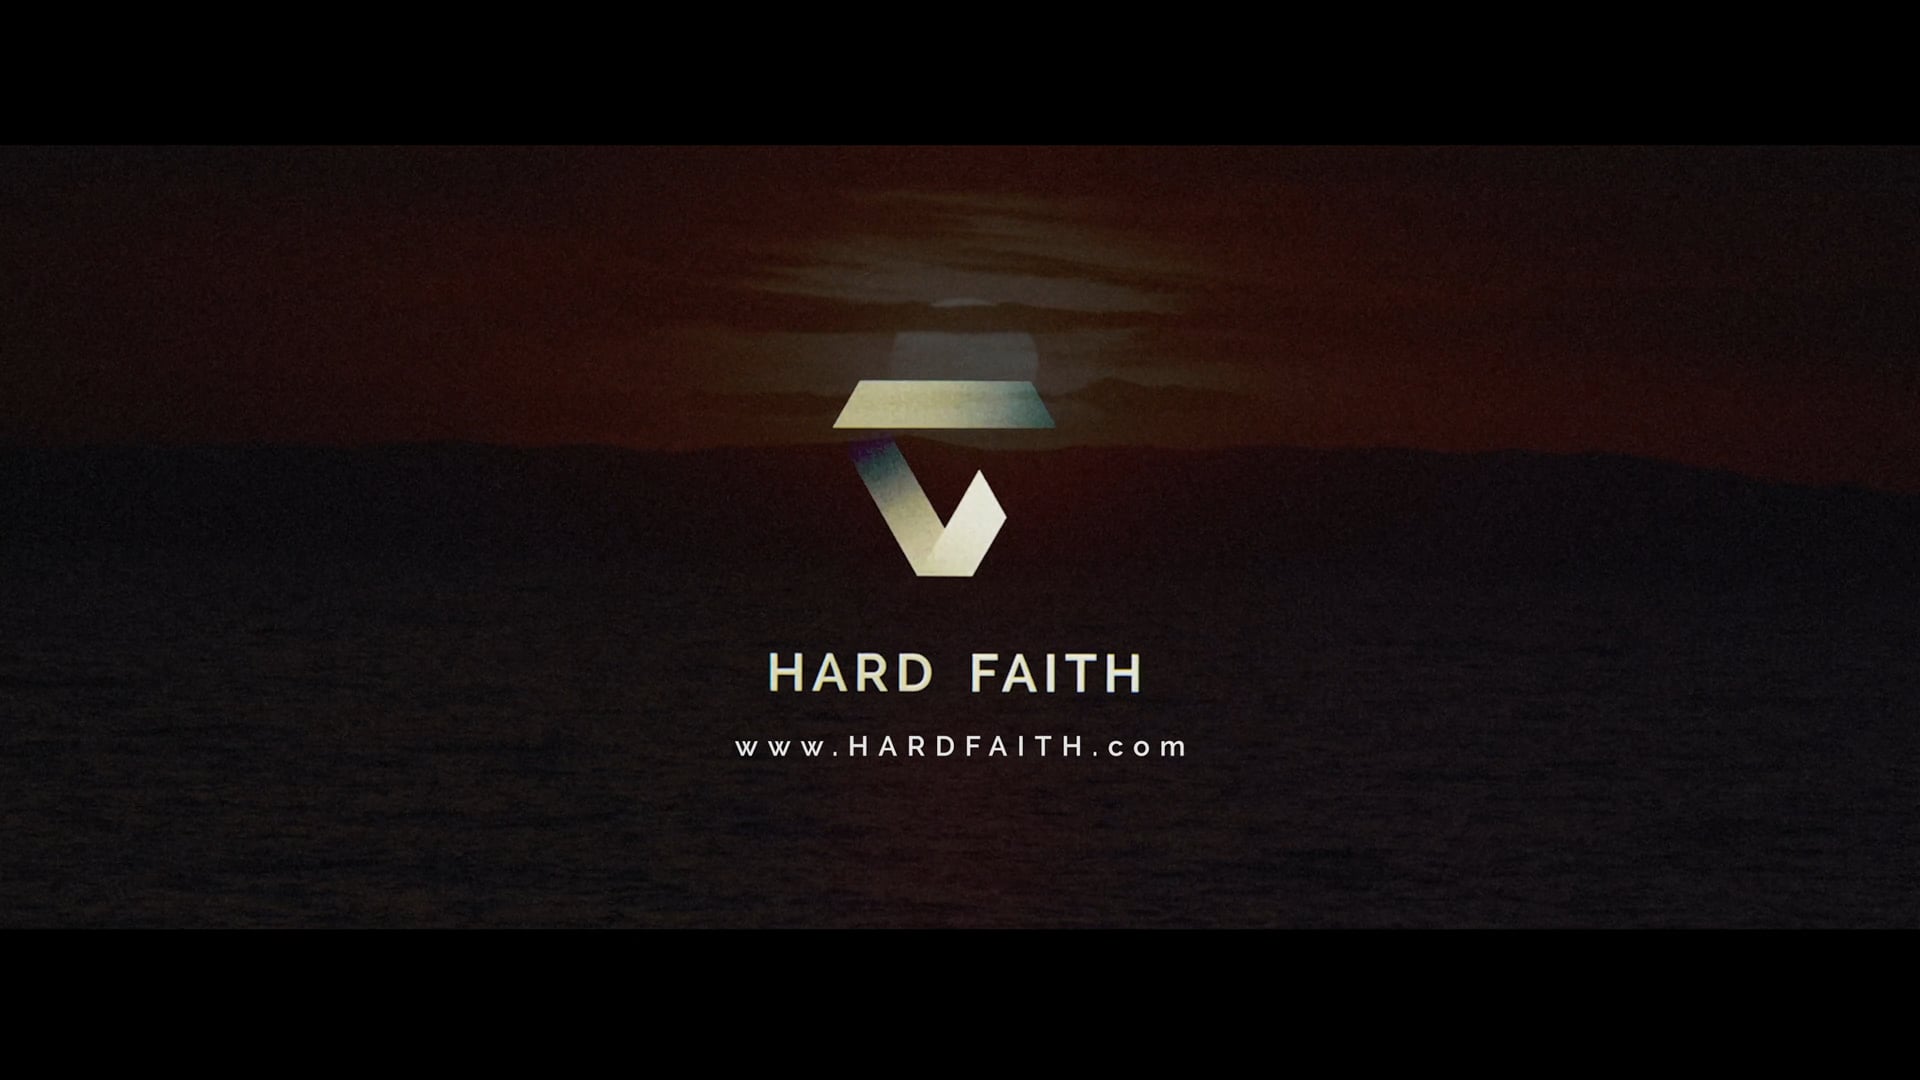 What is Hard Faith?